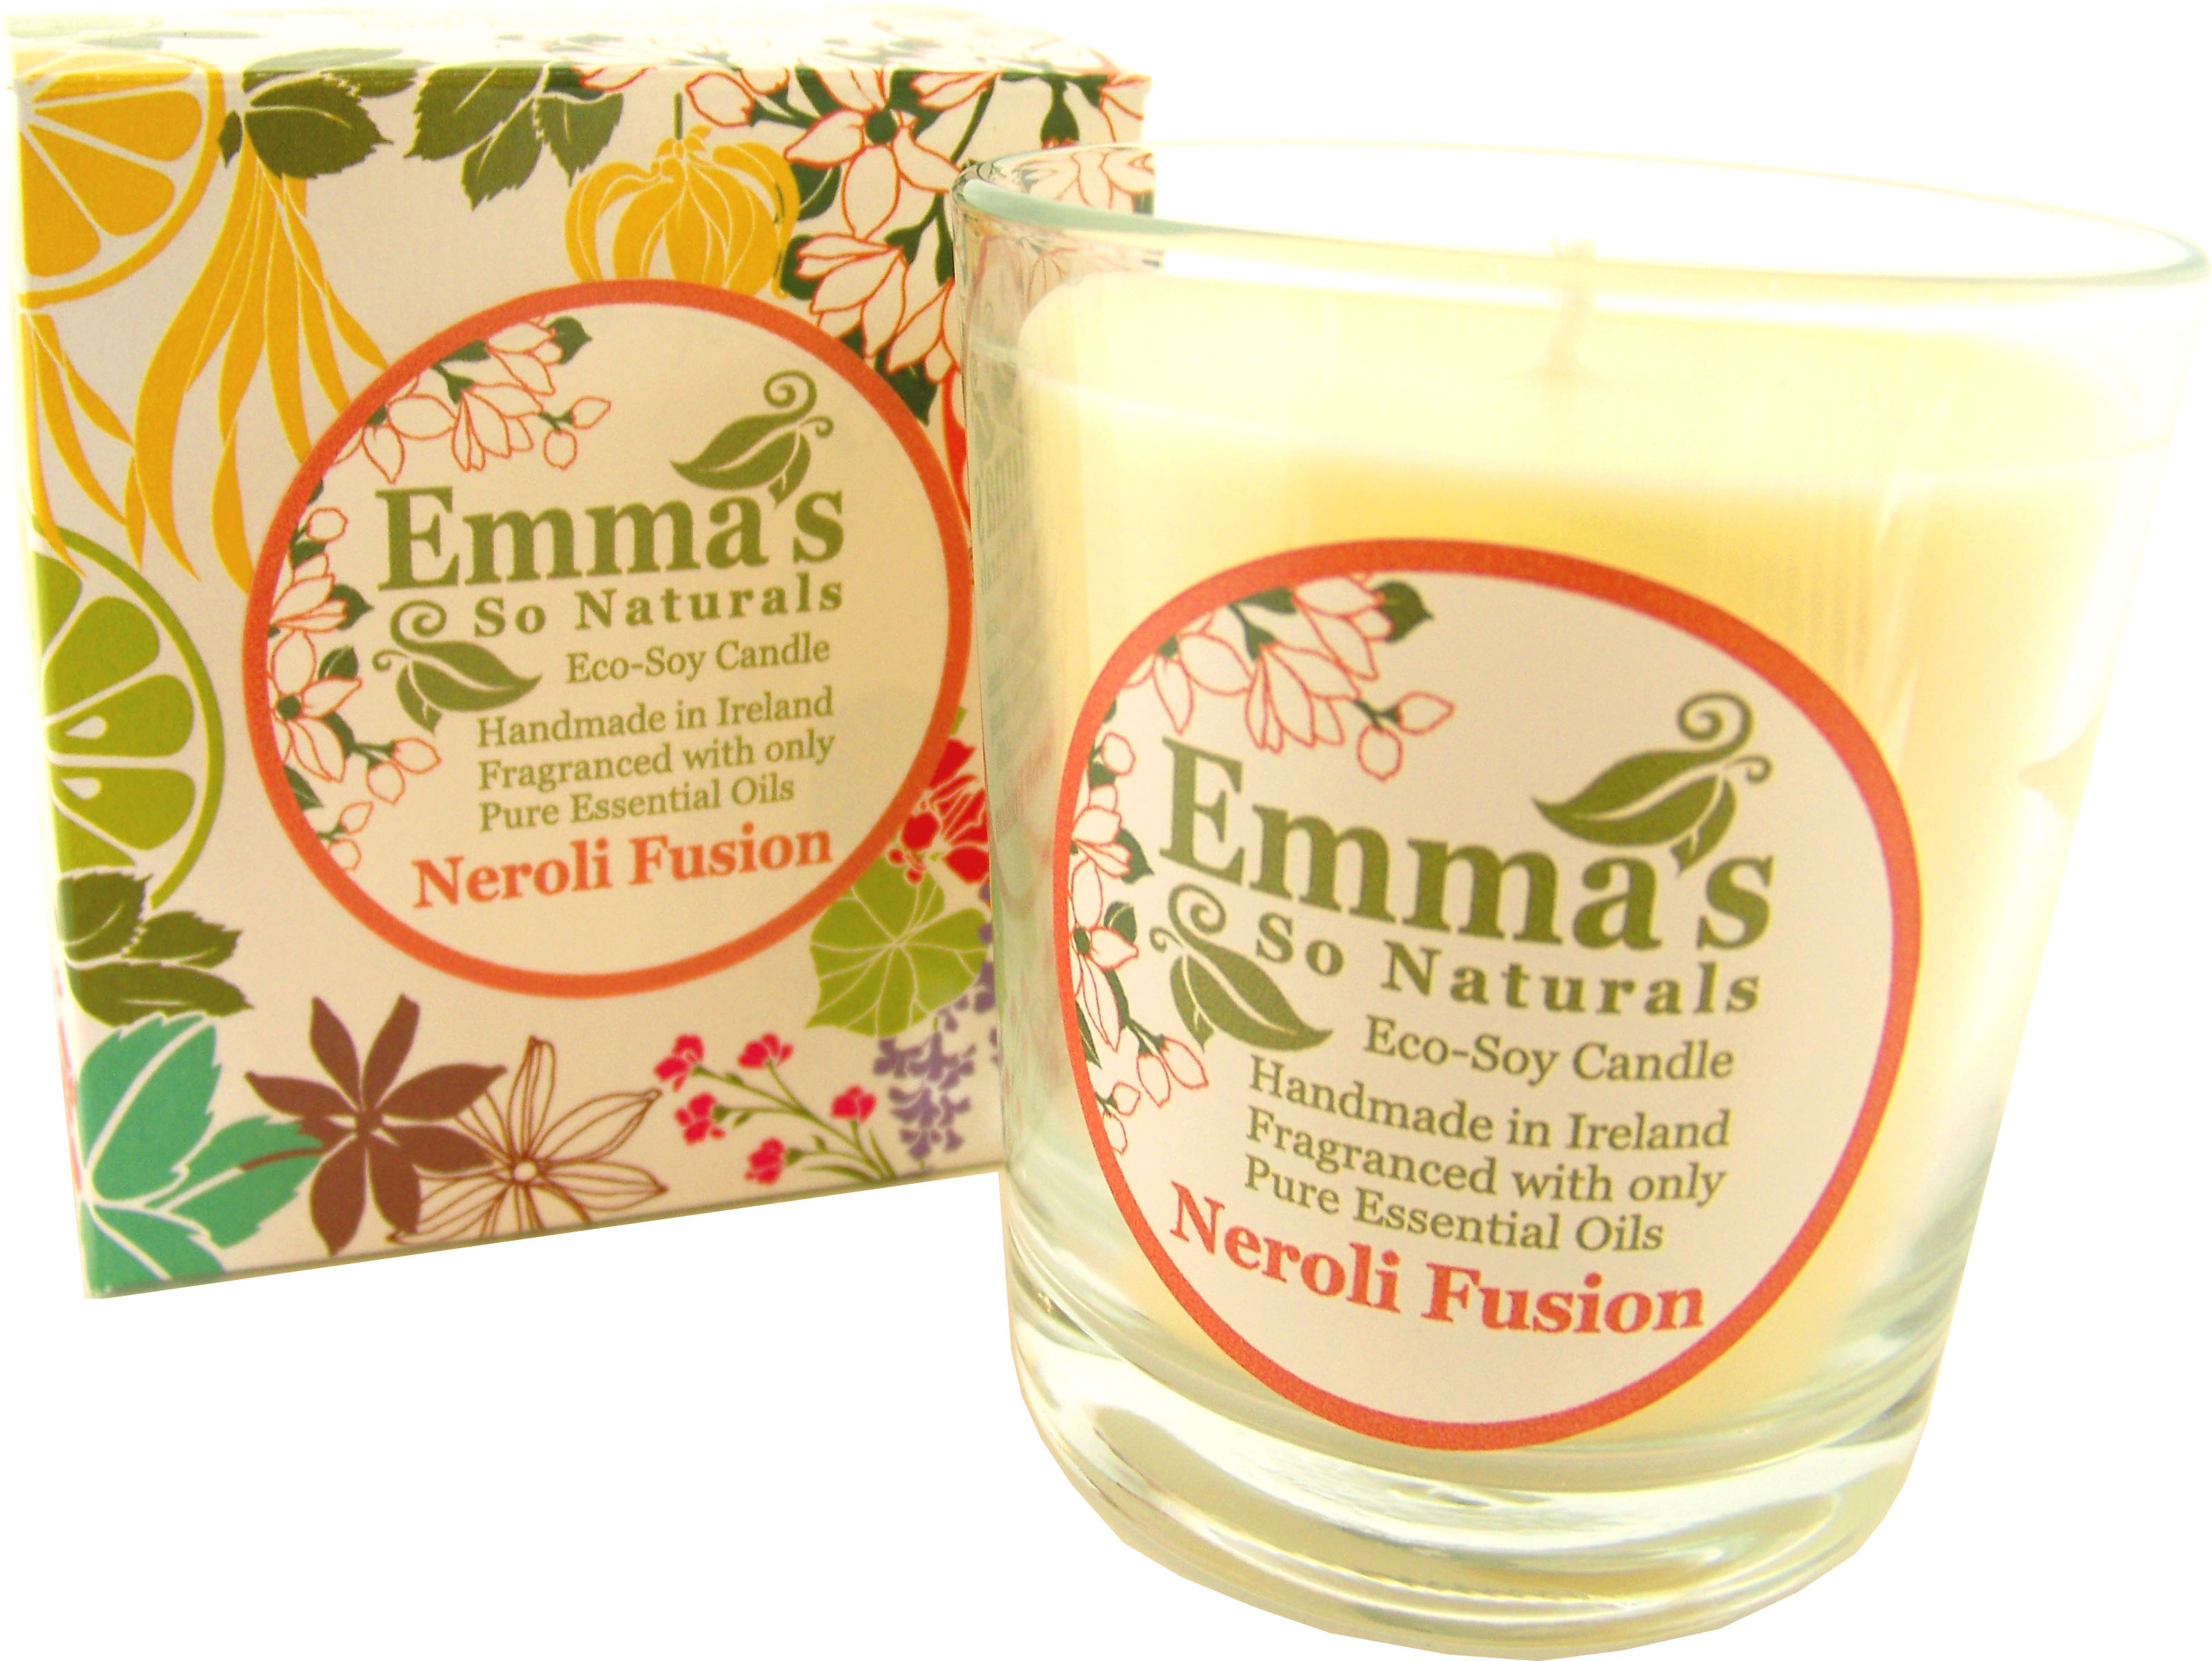 Emma's So Naturals Neroli Tumbler Candle & Box